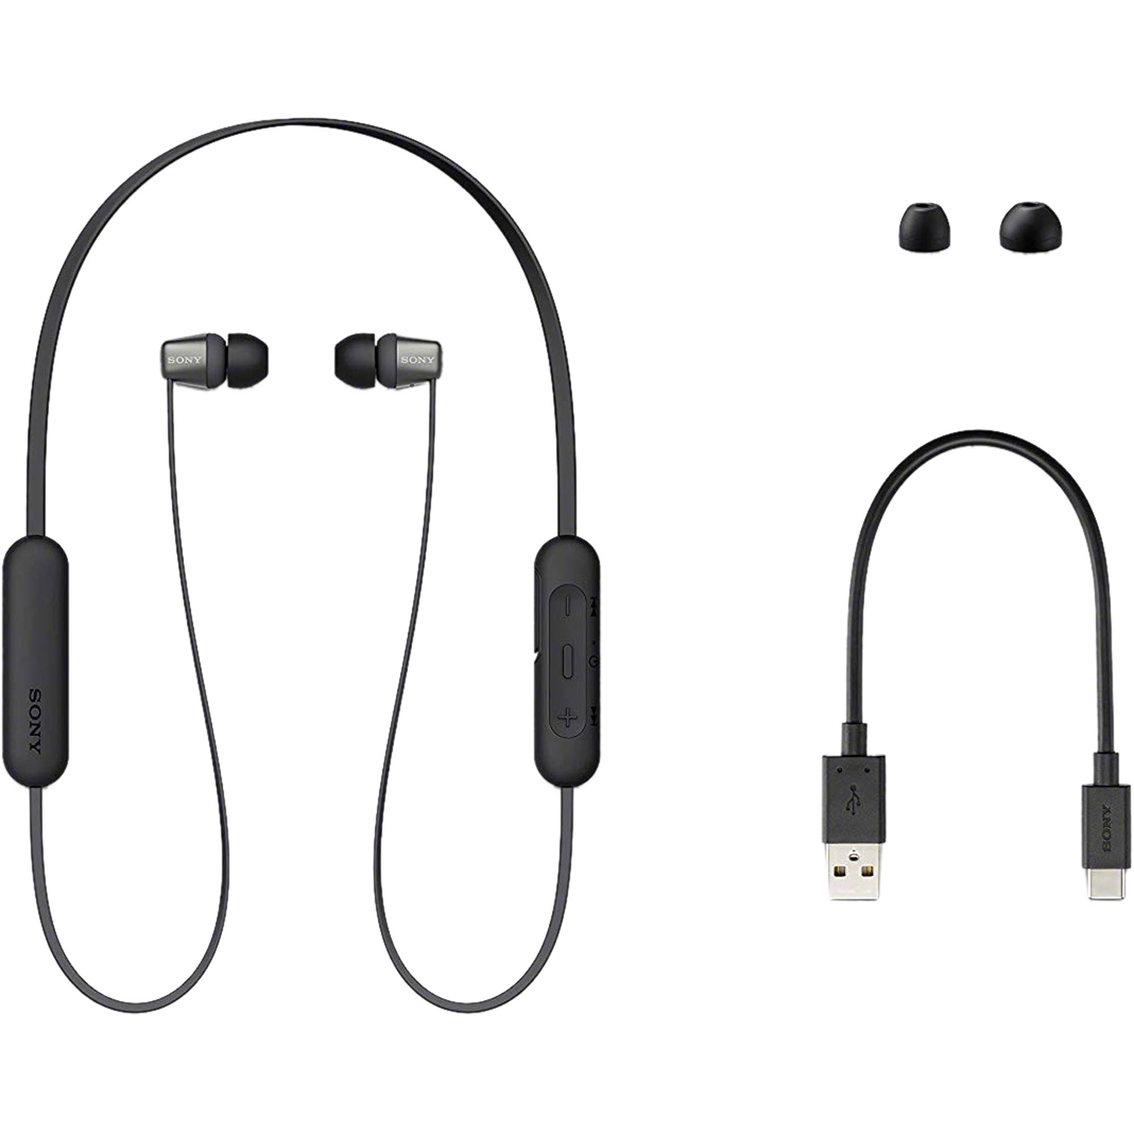 Sony WI-C310 Wireless In Ear Headphones - Image 5 of 6